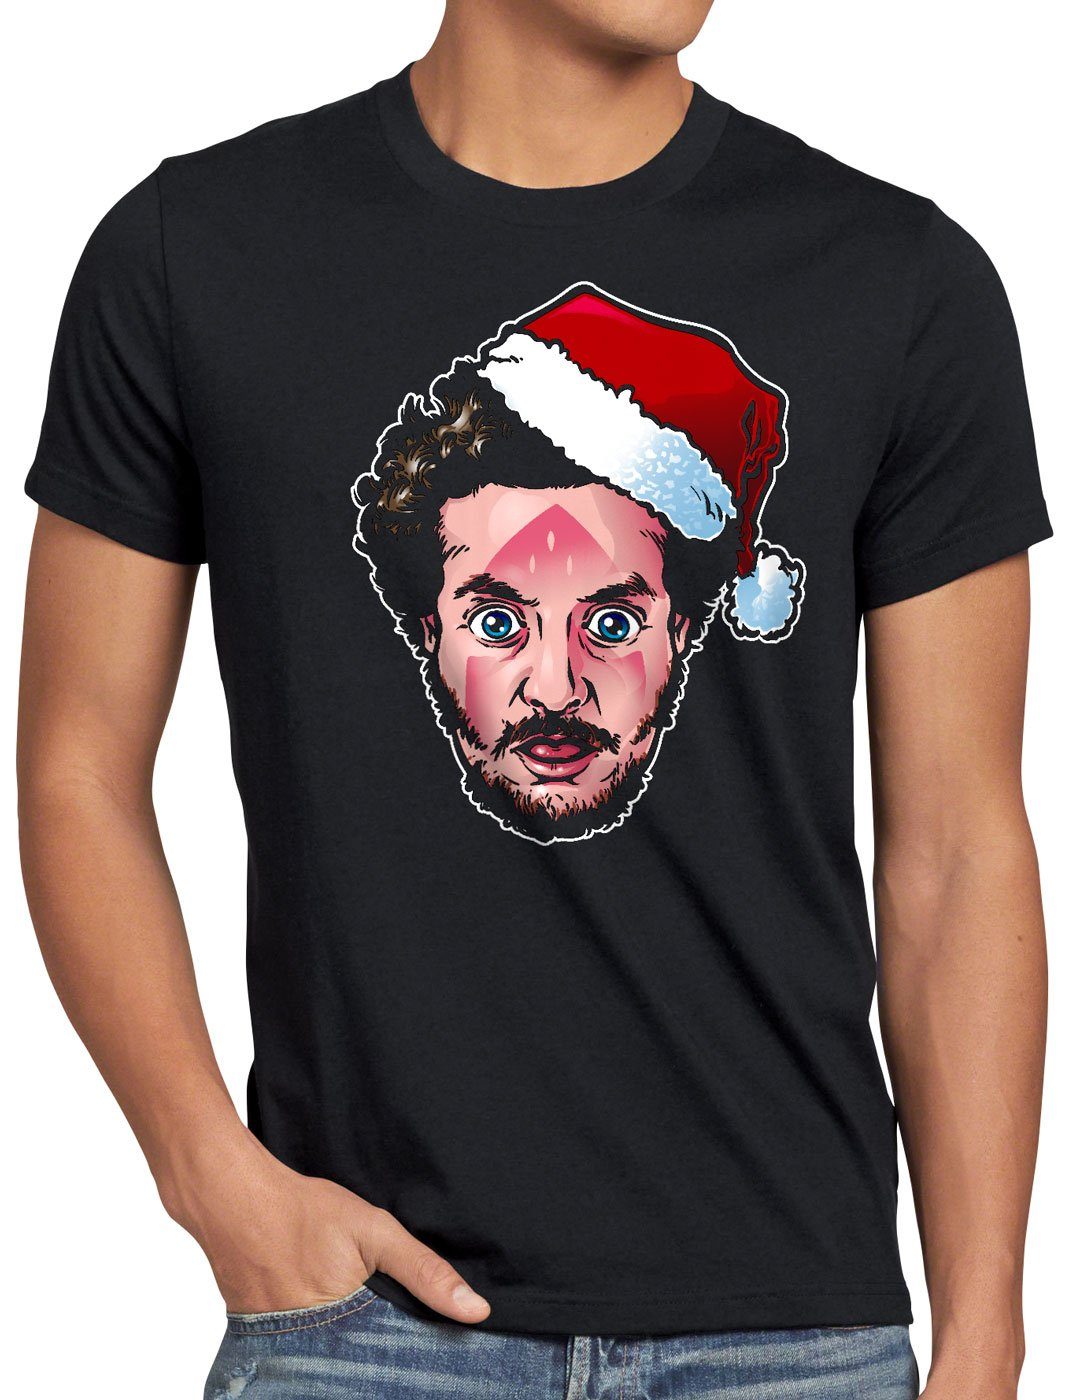 T-Shirt Bandit allein style3 schwarz Herren Marv kevin weihnachten bügeleisen Print-Shirt